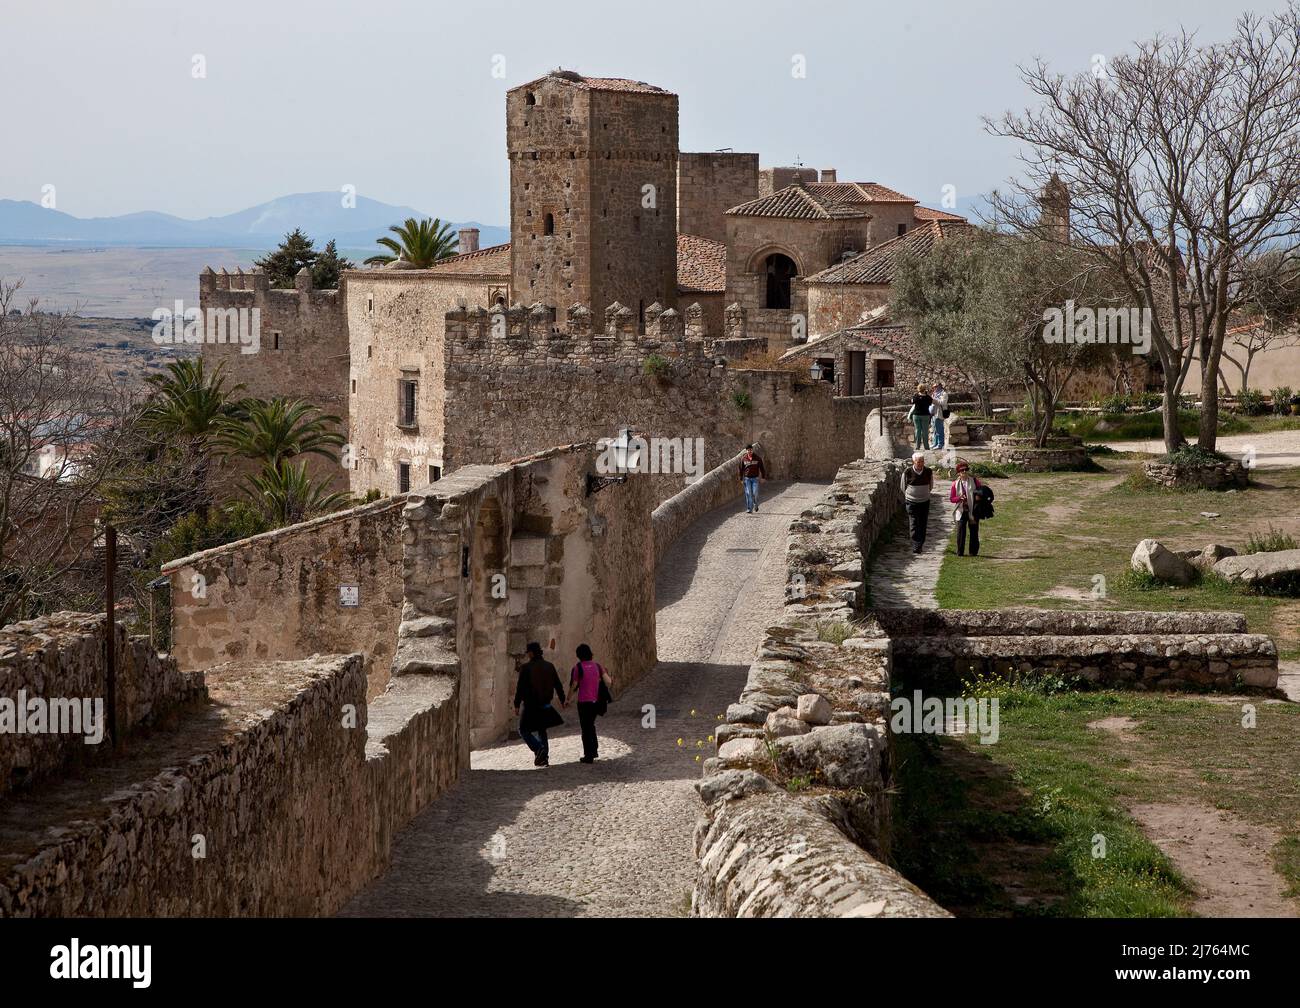 Blick aus Richtung Burg auf profane und sakrale Bauten mit Personen Stock Photo